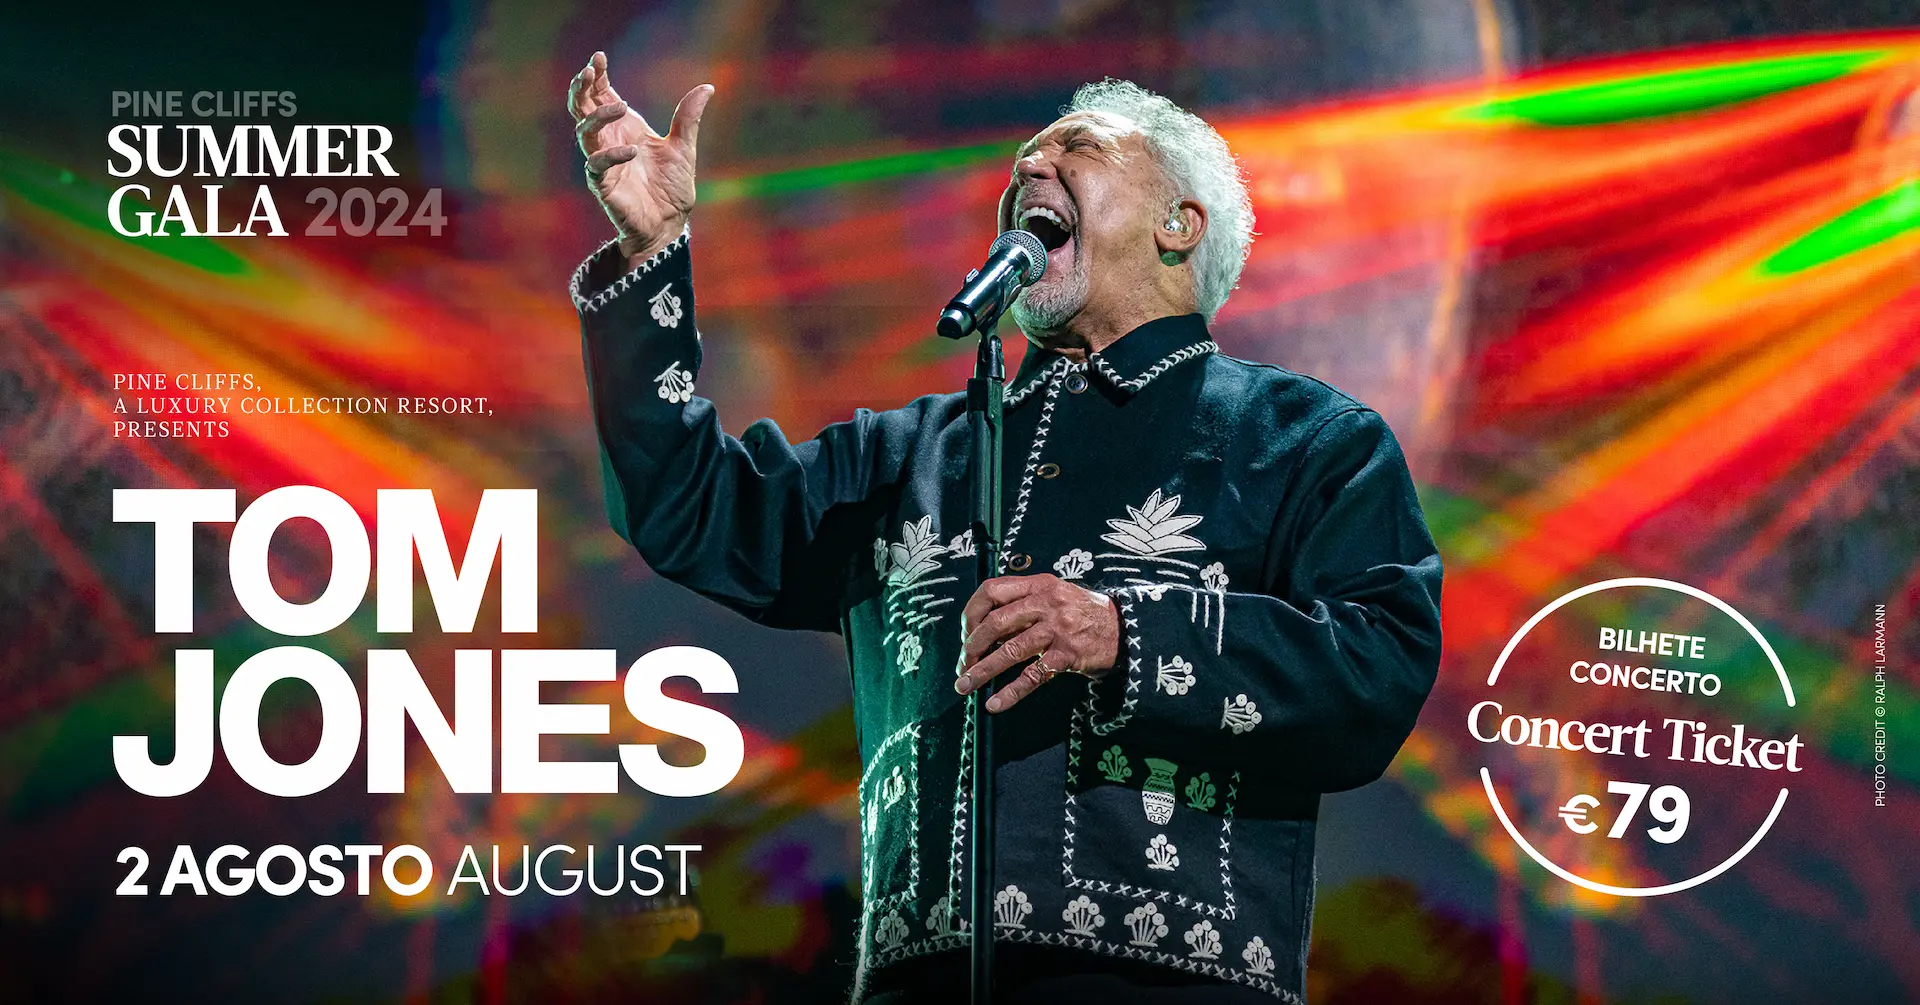 Tom Jones concert, august 2nd, ticket is 79 euros